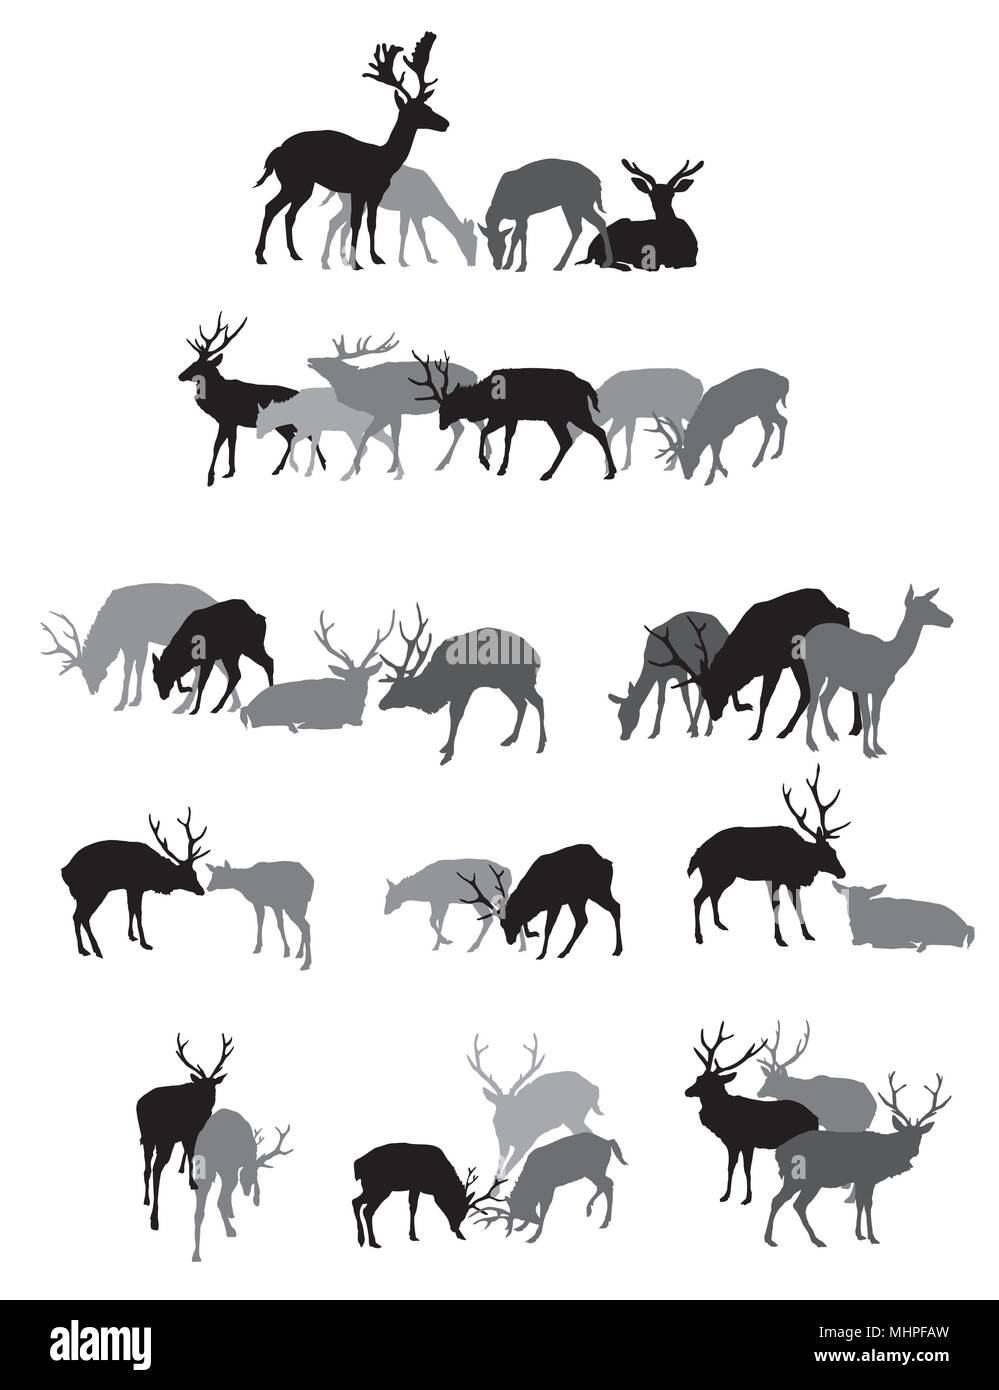 Groupe des silhouettes isolées noir et gris des chevreuils mâles (une femme) red deer standing,la marche et se trouvant isolé sur fond blanc. Vector illust Illustration de Vecteur